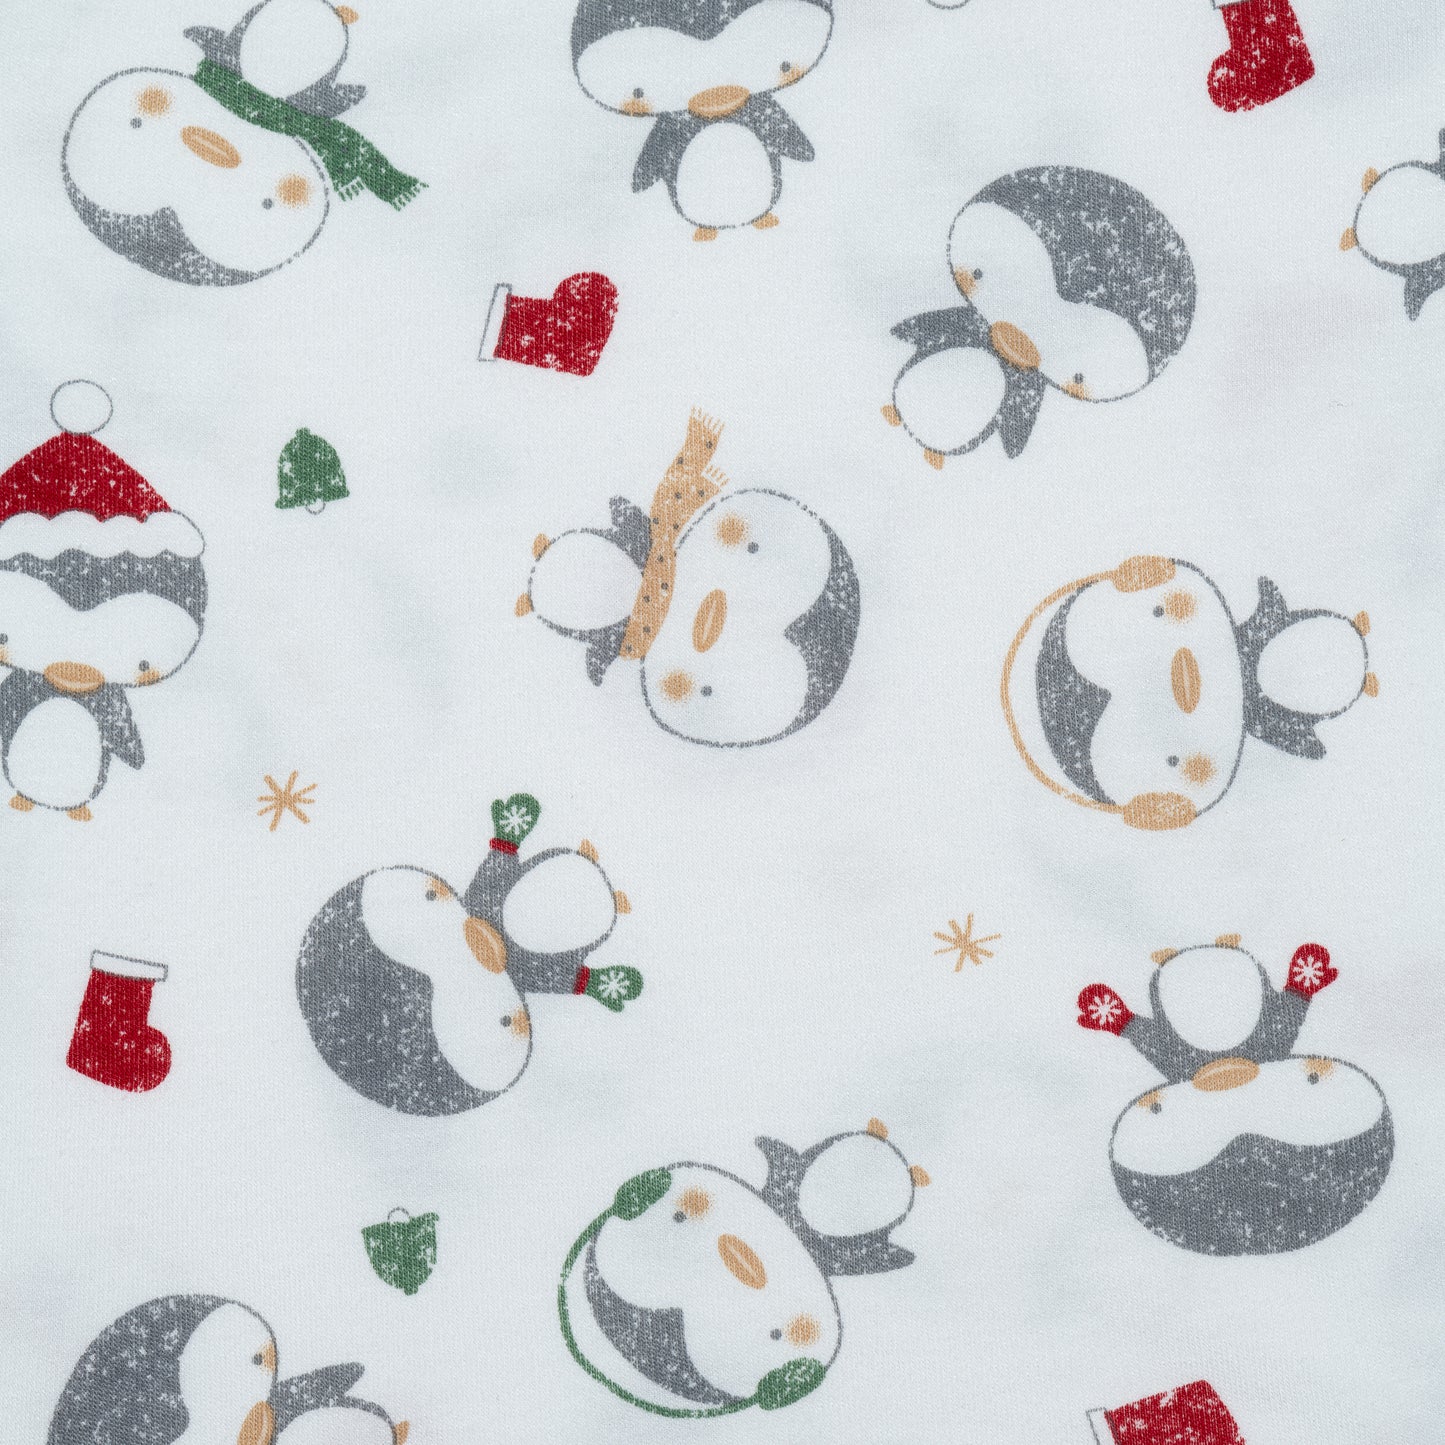 Pyjama 2 pièces en bambou - Pinguoins de Noël